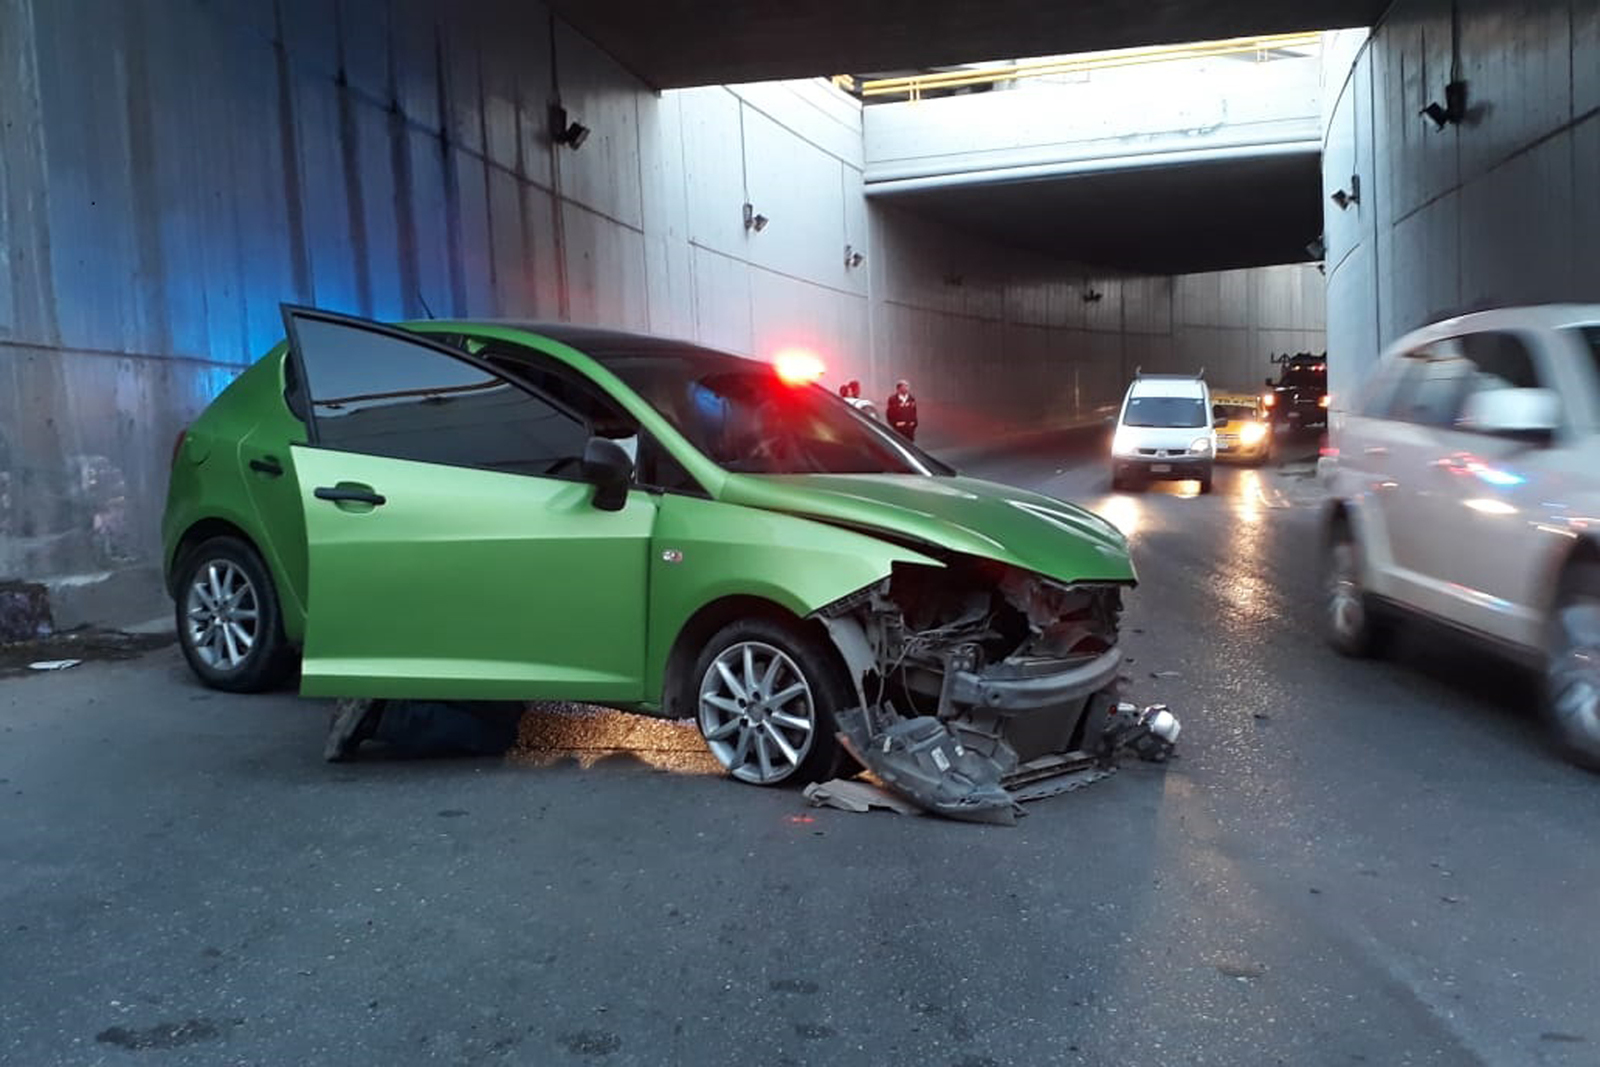 Daños. El vehículo Seat Ibiza presentó daños de consideración en la parte del frente luego de impactarse contra el muro.